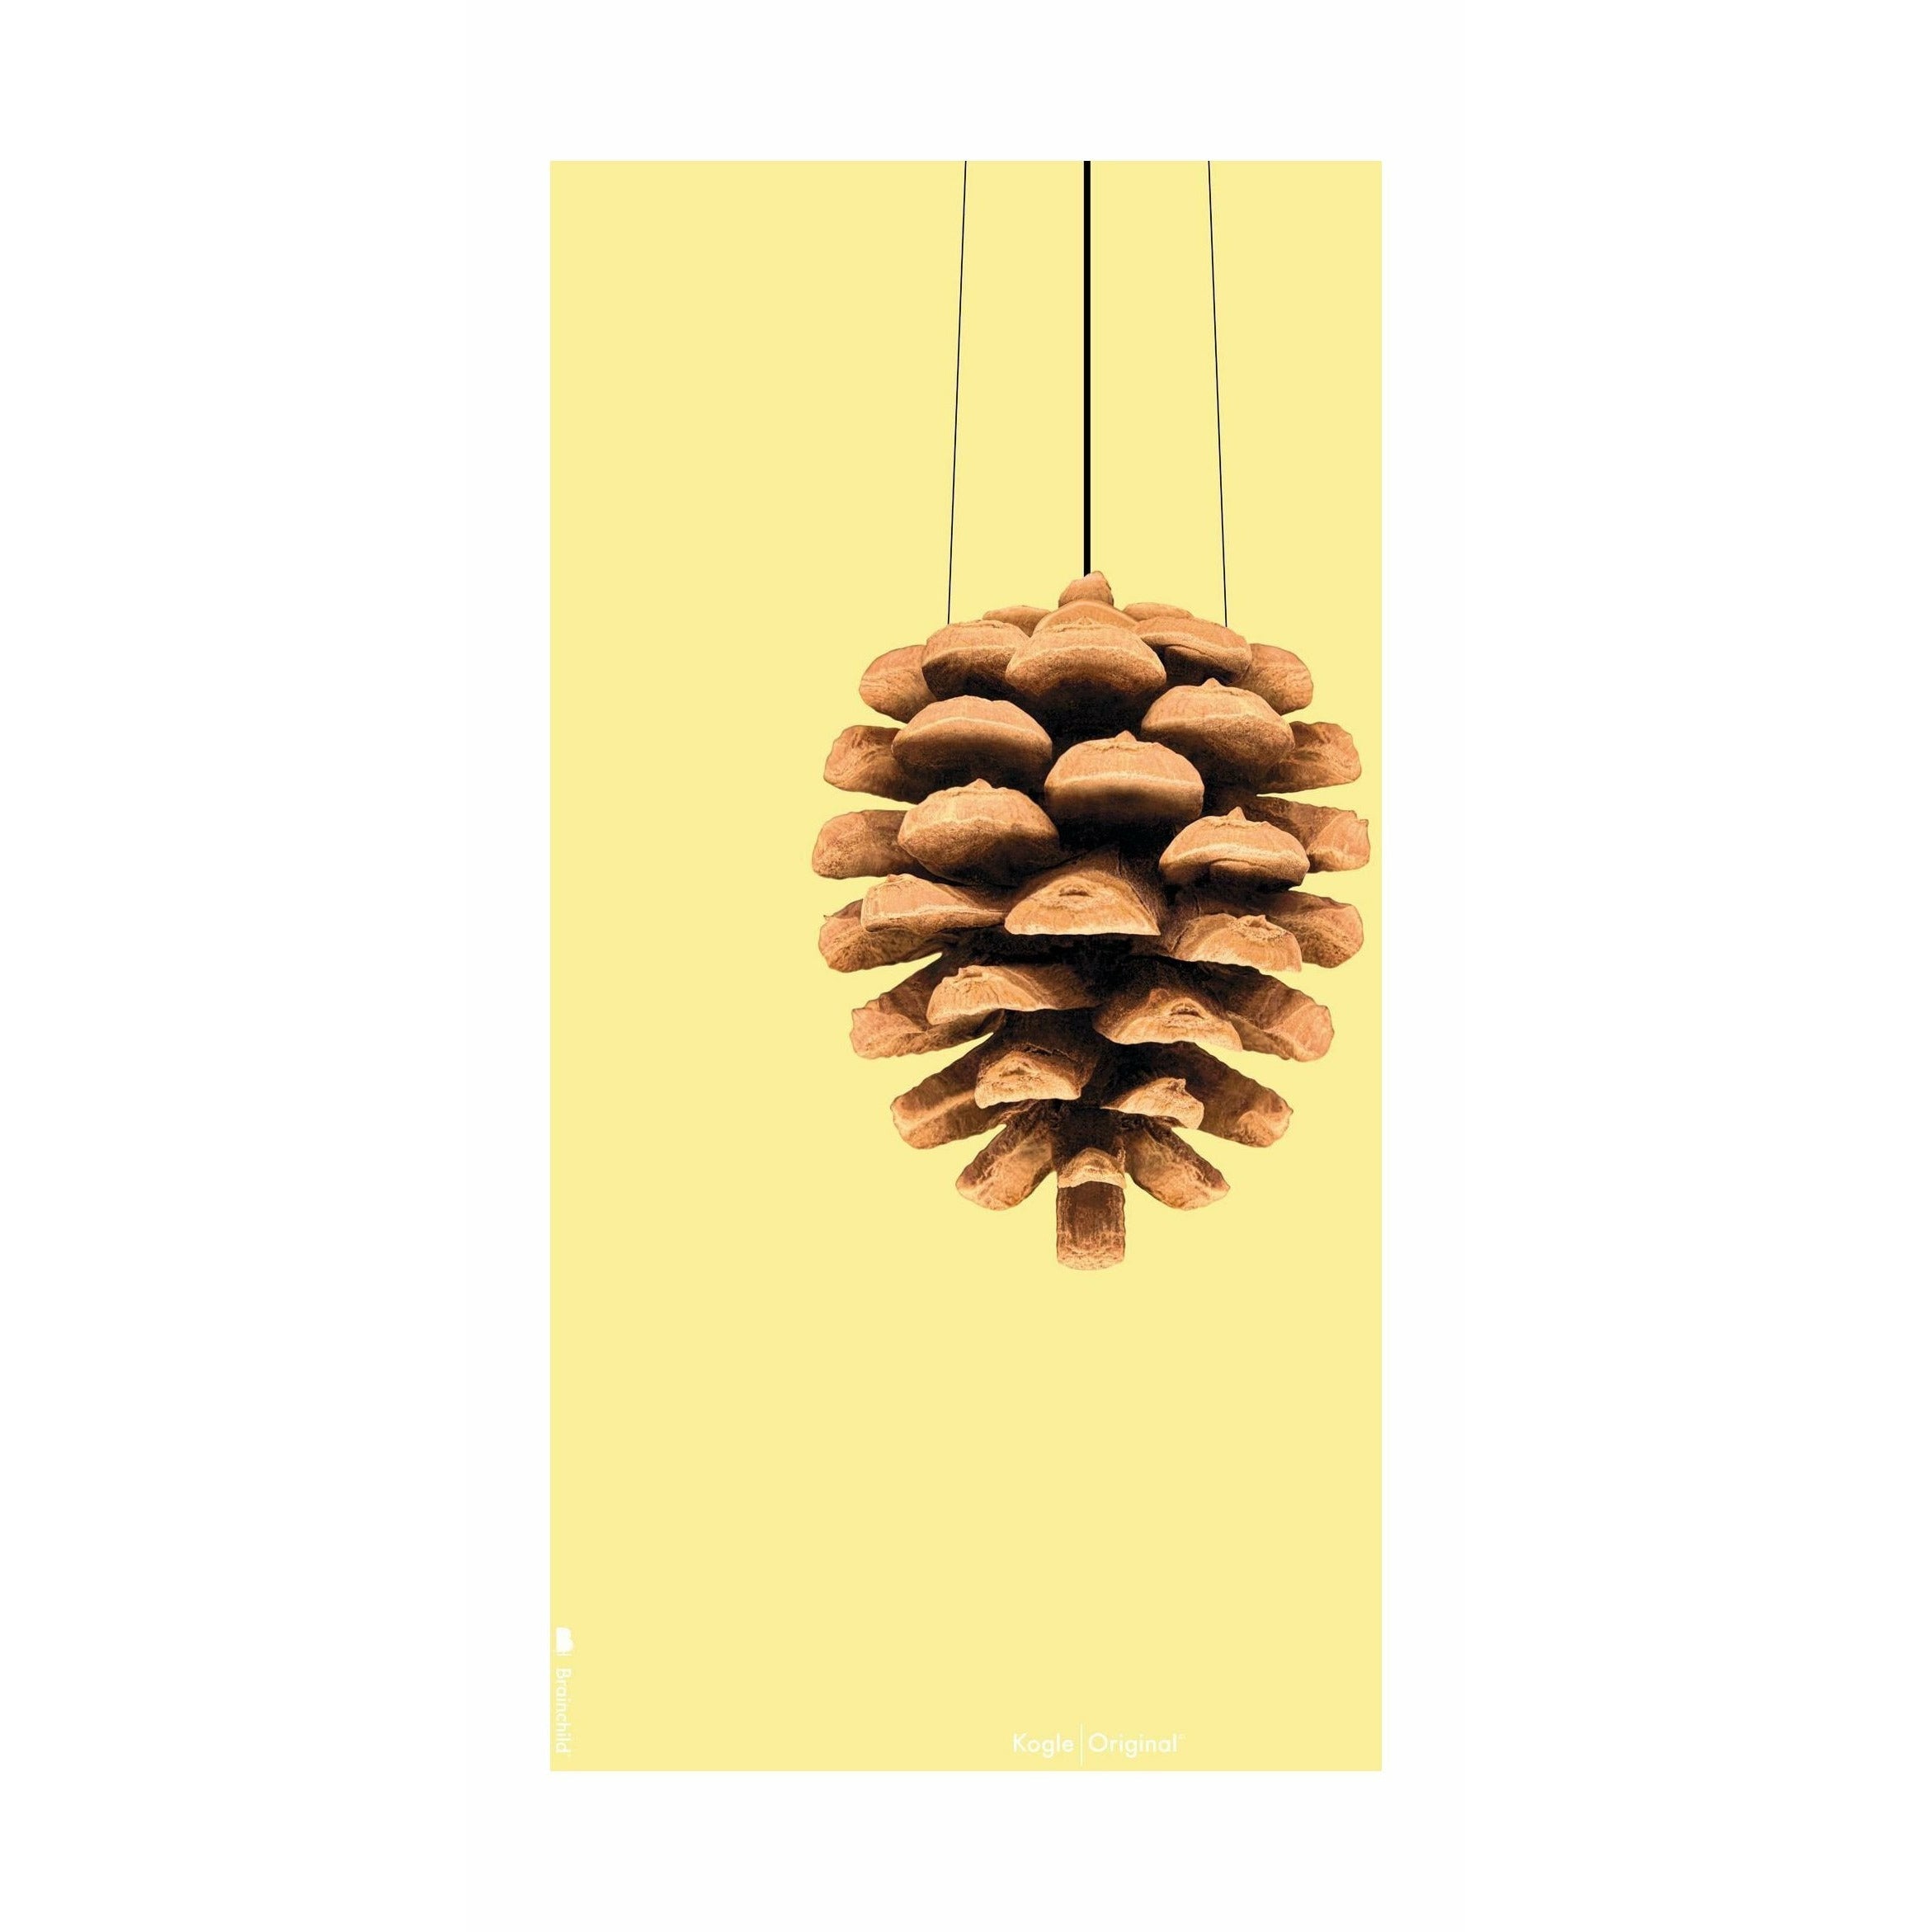 Brainchild Pine Cone Classic Poster ohne Rahmen 50x70 cm, gelber Hintergrund